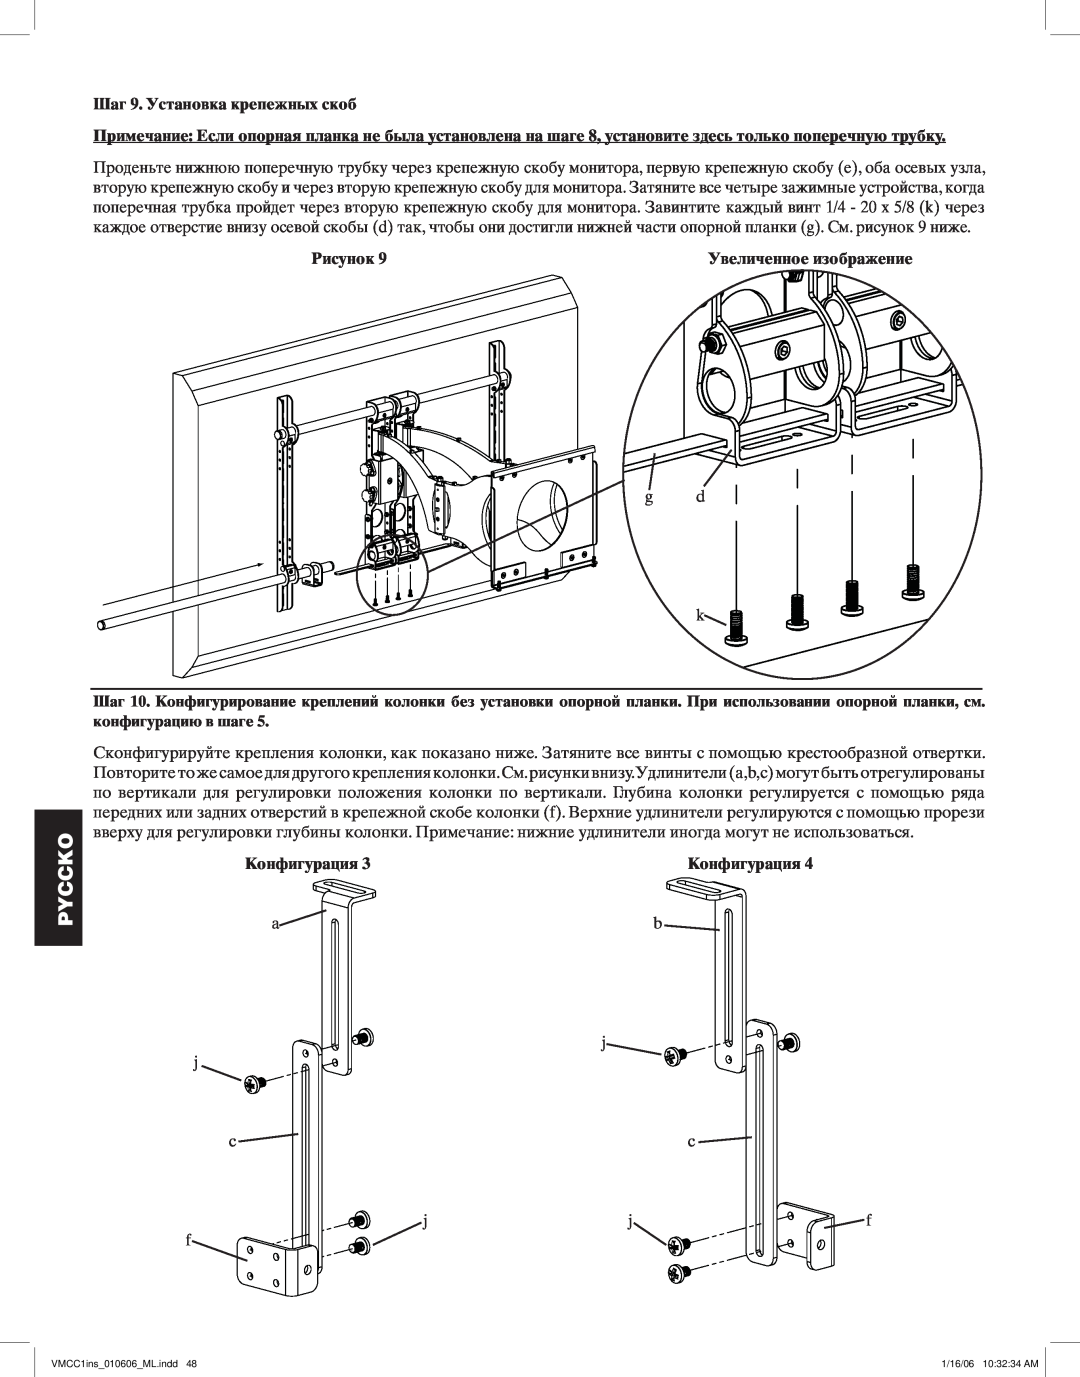 Sanus Systems VMCC1 manual Шаг 9. Установка крепежных скоб, Pyccko, Рисунок, Конфигурация 